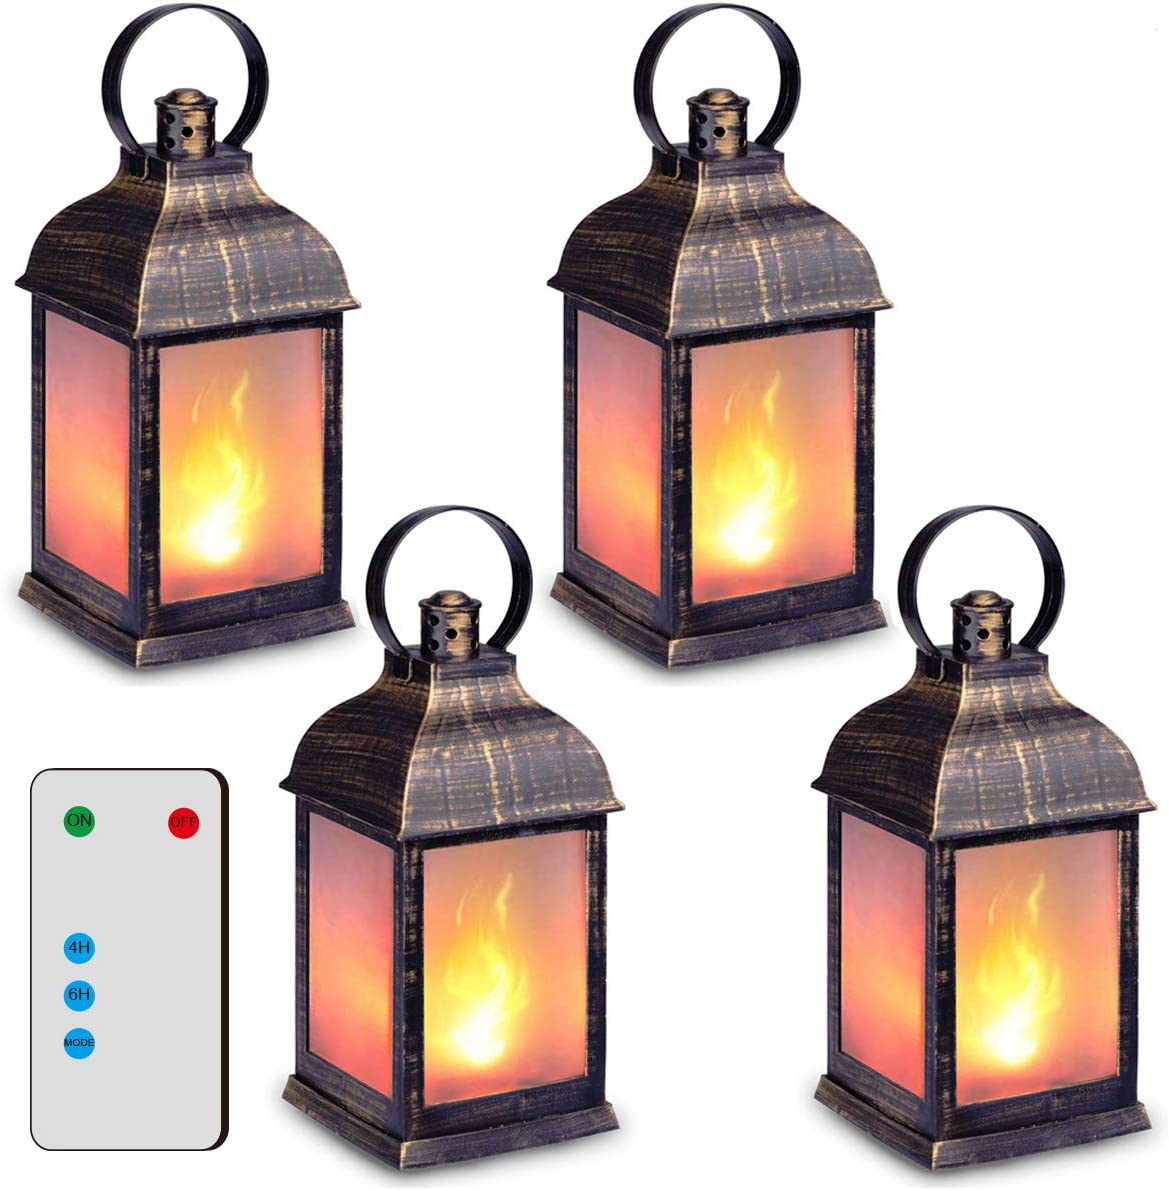 https://flameproduct.com/wp-content/uploads/2022/12/ZKEE-Vintage-Style-LED-Flame-Lantern.jpg